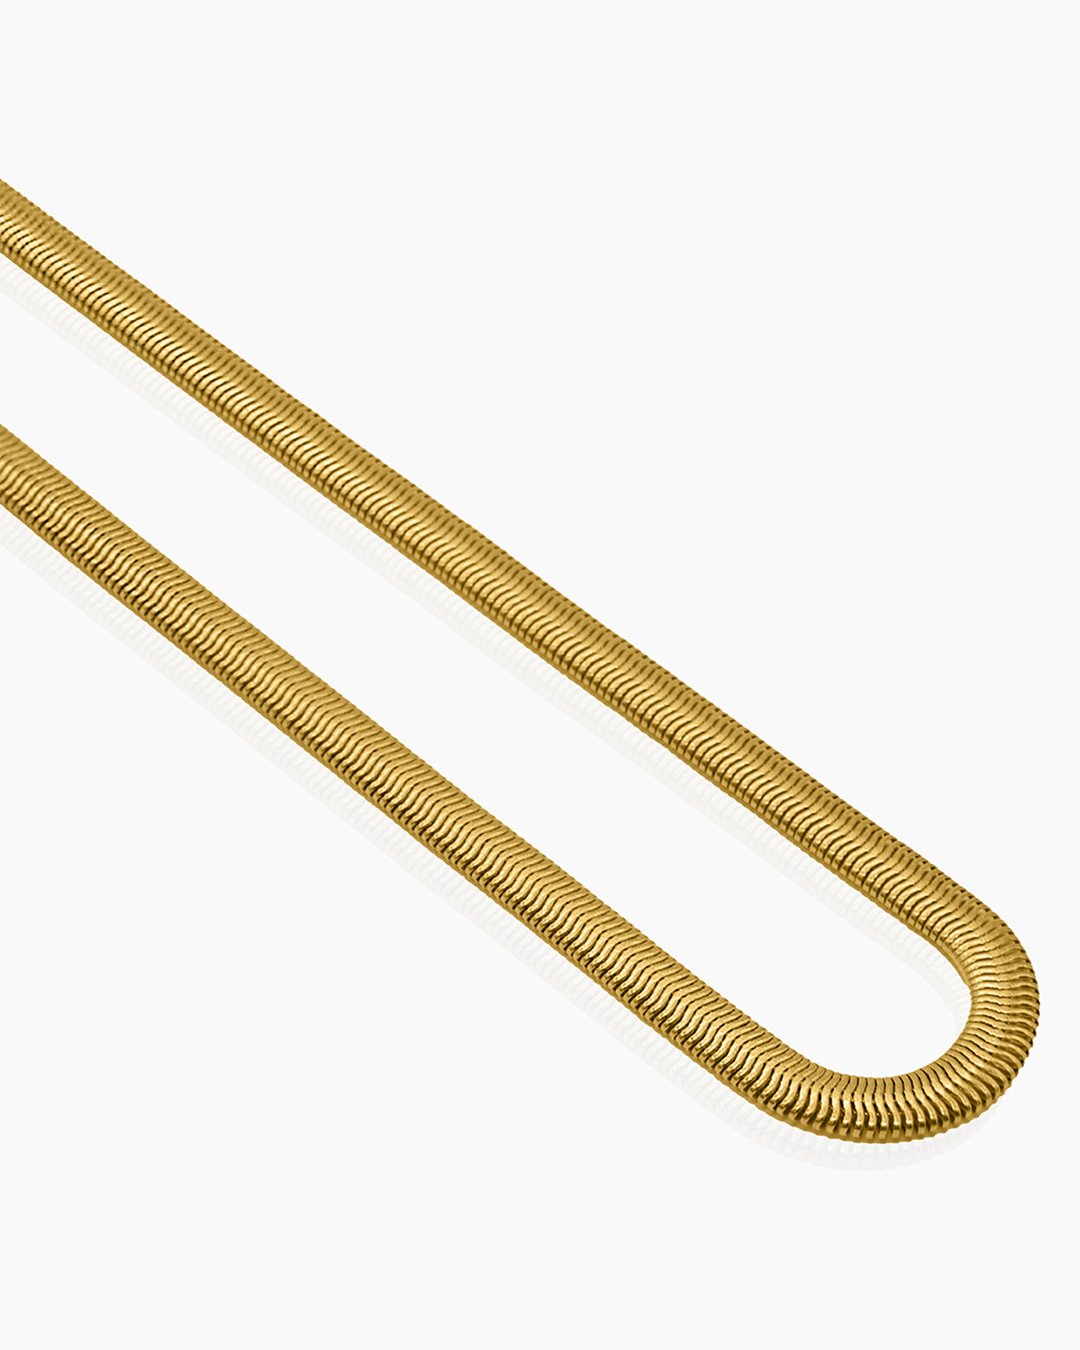 42cm Snake Chain